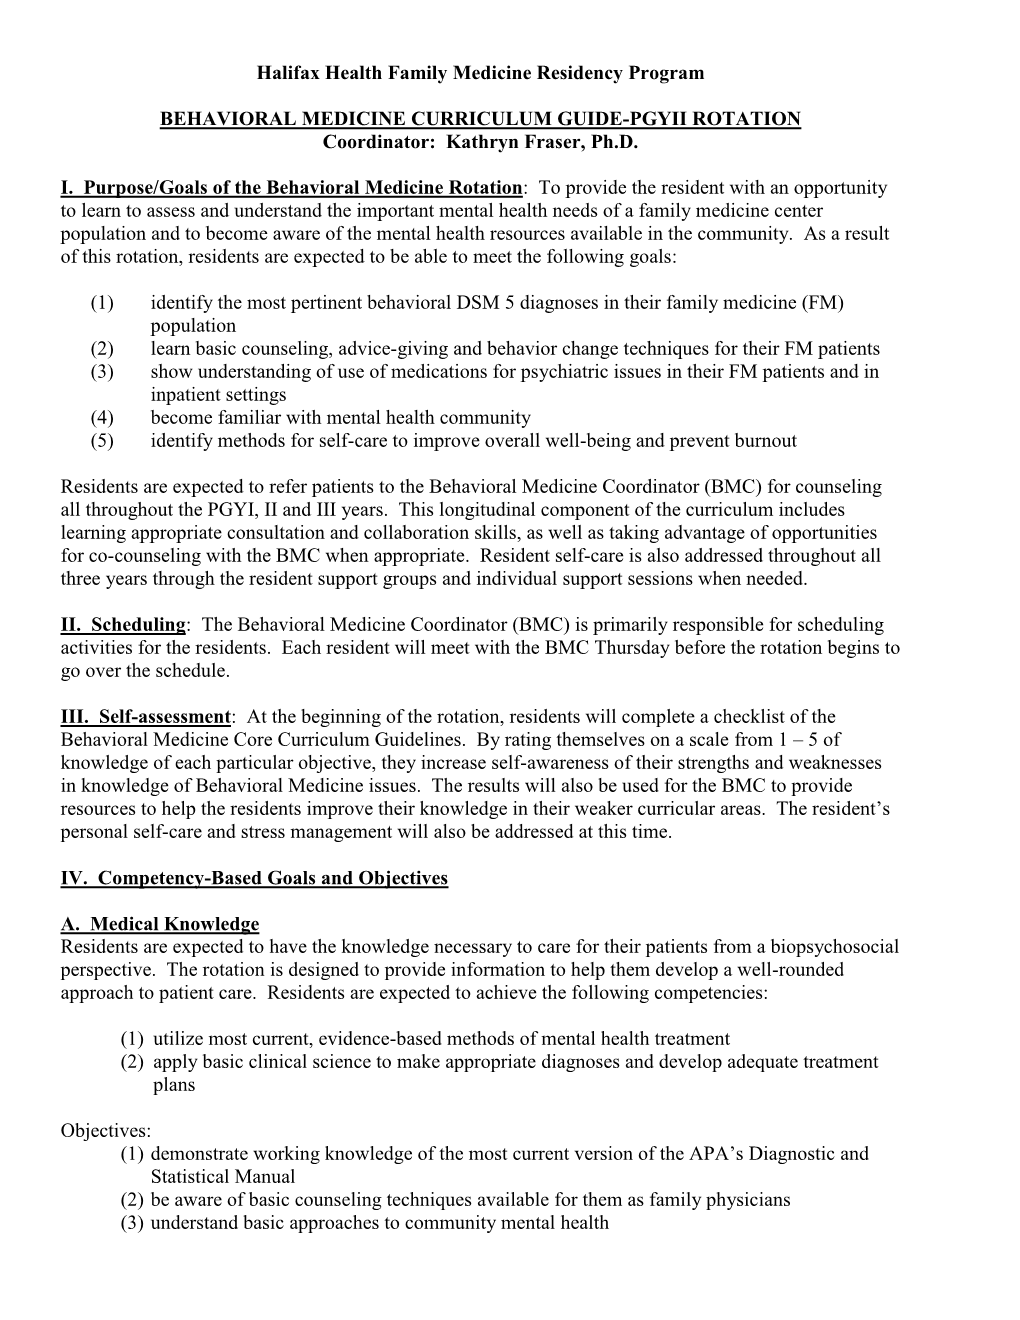 Daytona Behavioral Medicine Curriculum Revised June 2020.Pdf